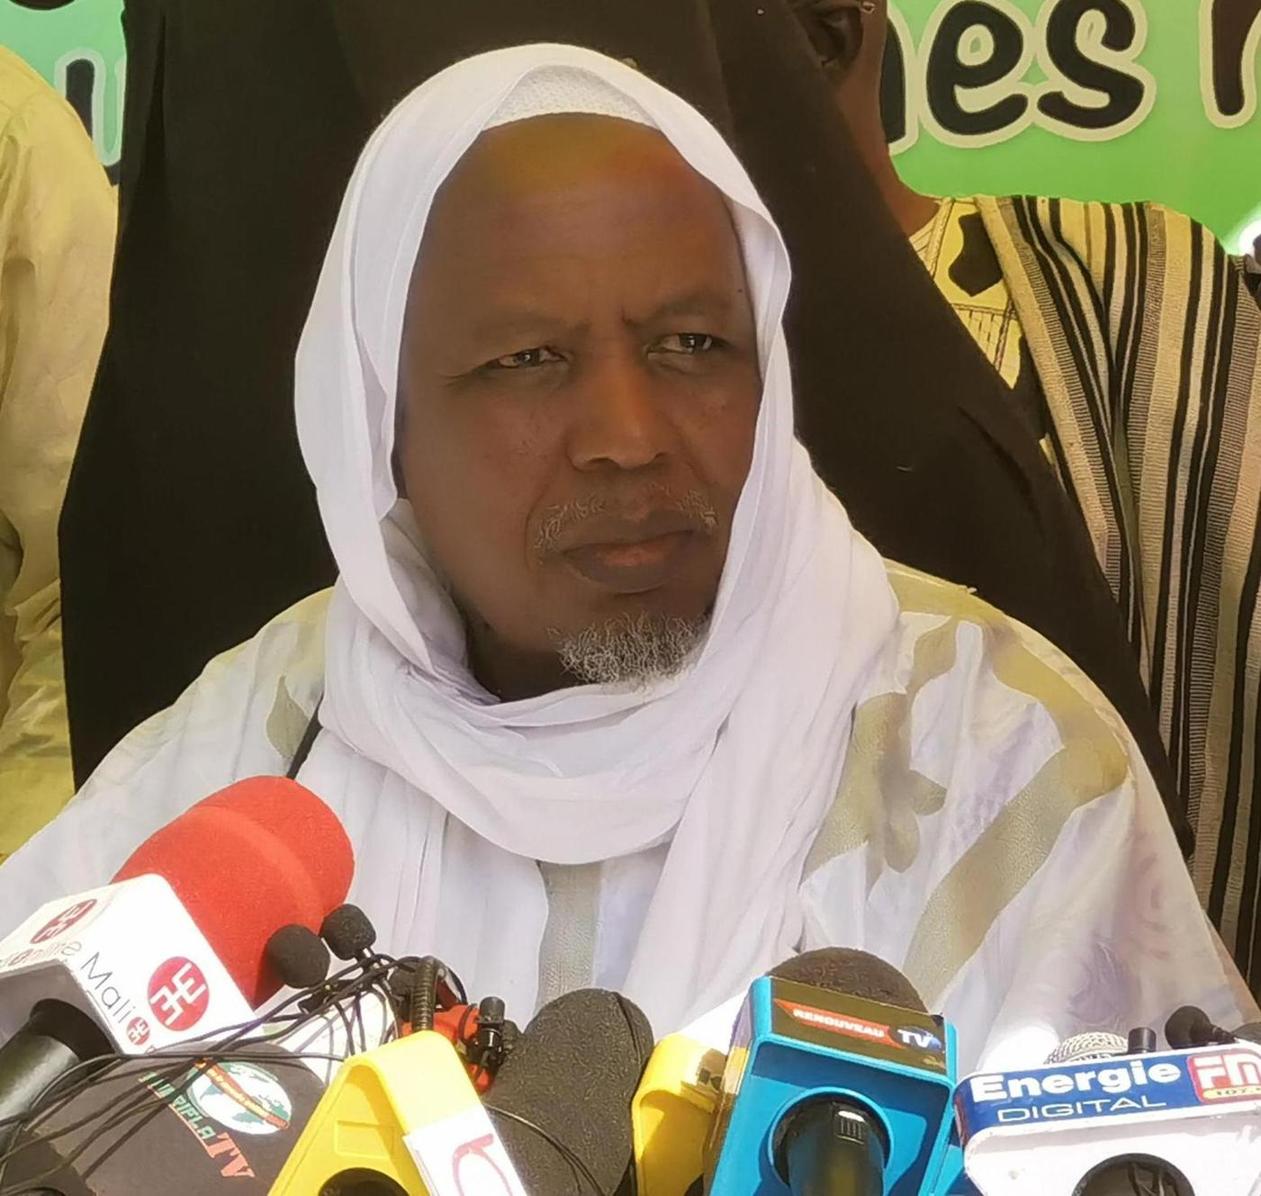 Vive tension entre le Mali et la CEDEAO: L’imam Mahmoud Dicko joue à l’apaisement et indique que le Mali est dépendant de certains pays voisins